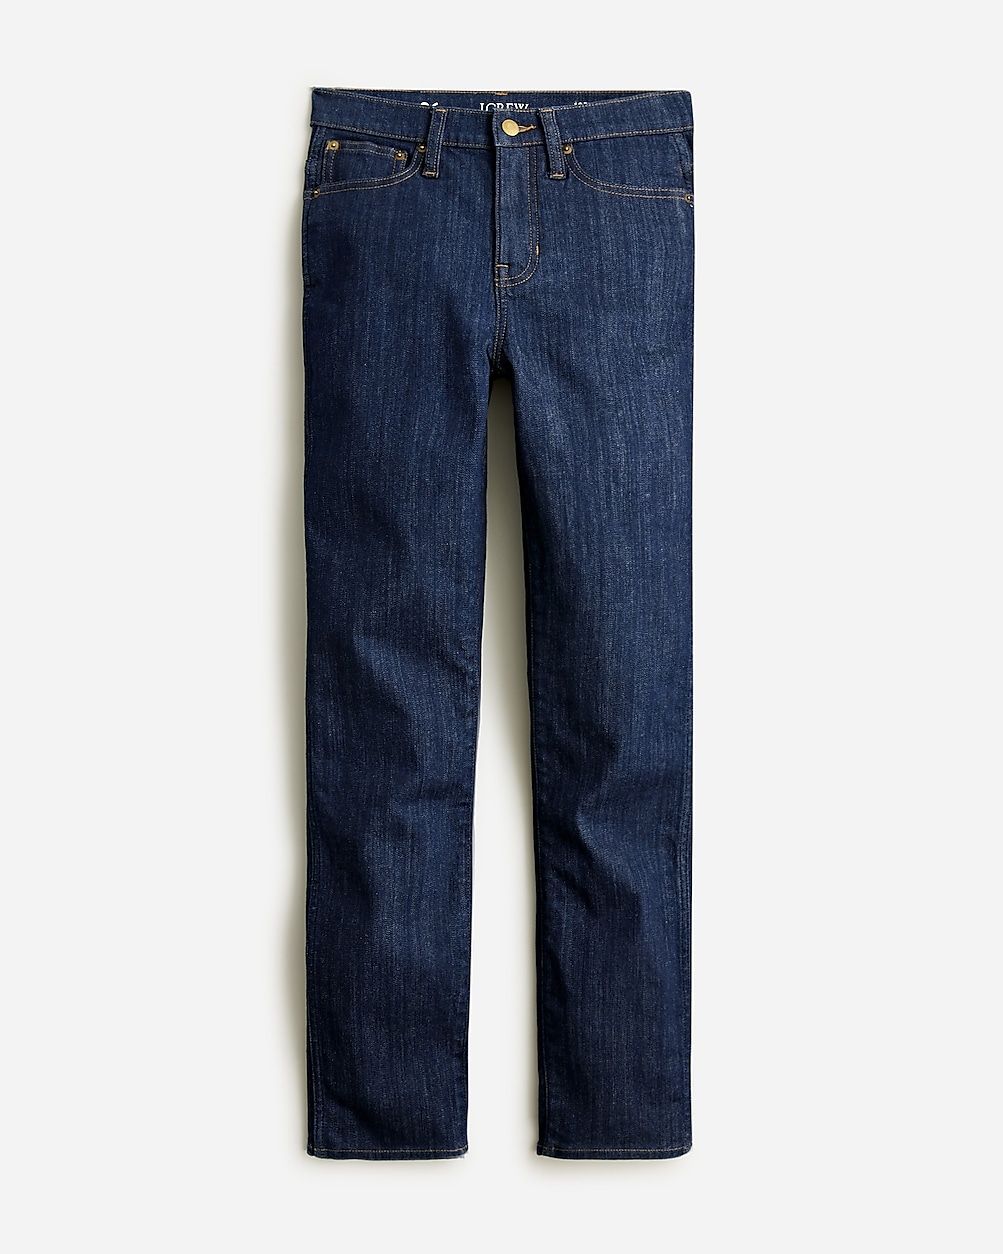 10" vintage slim-straight jean in Rinse wash | J.Crew US